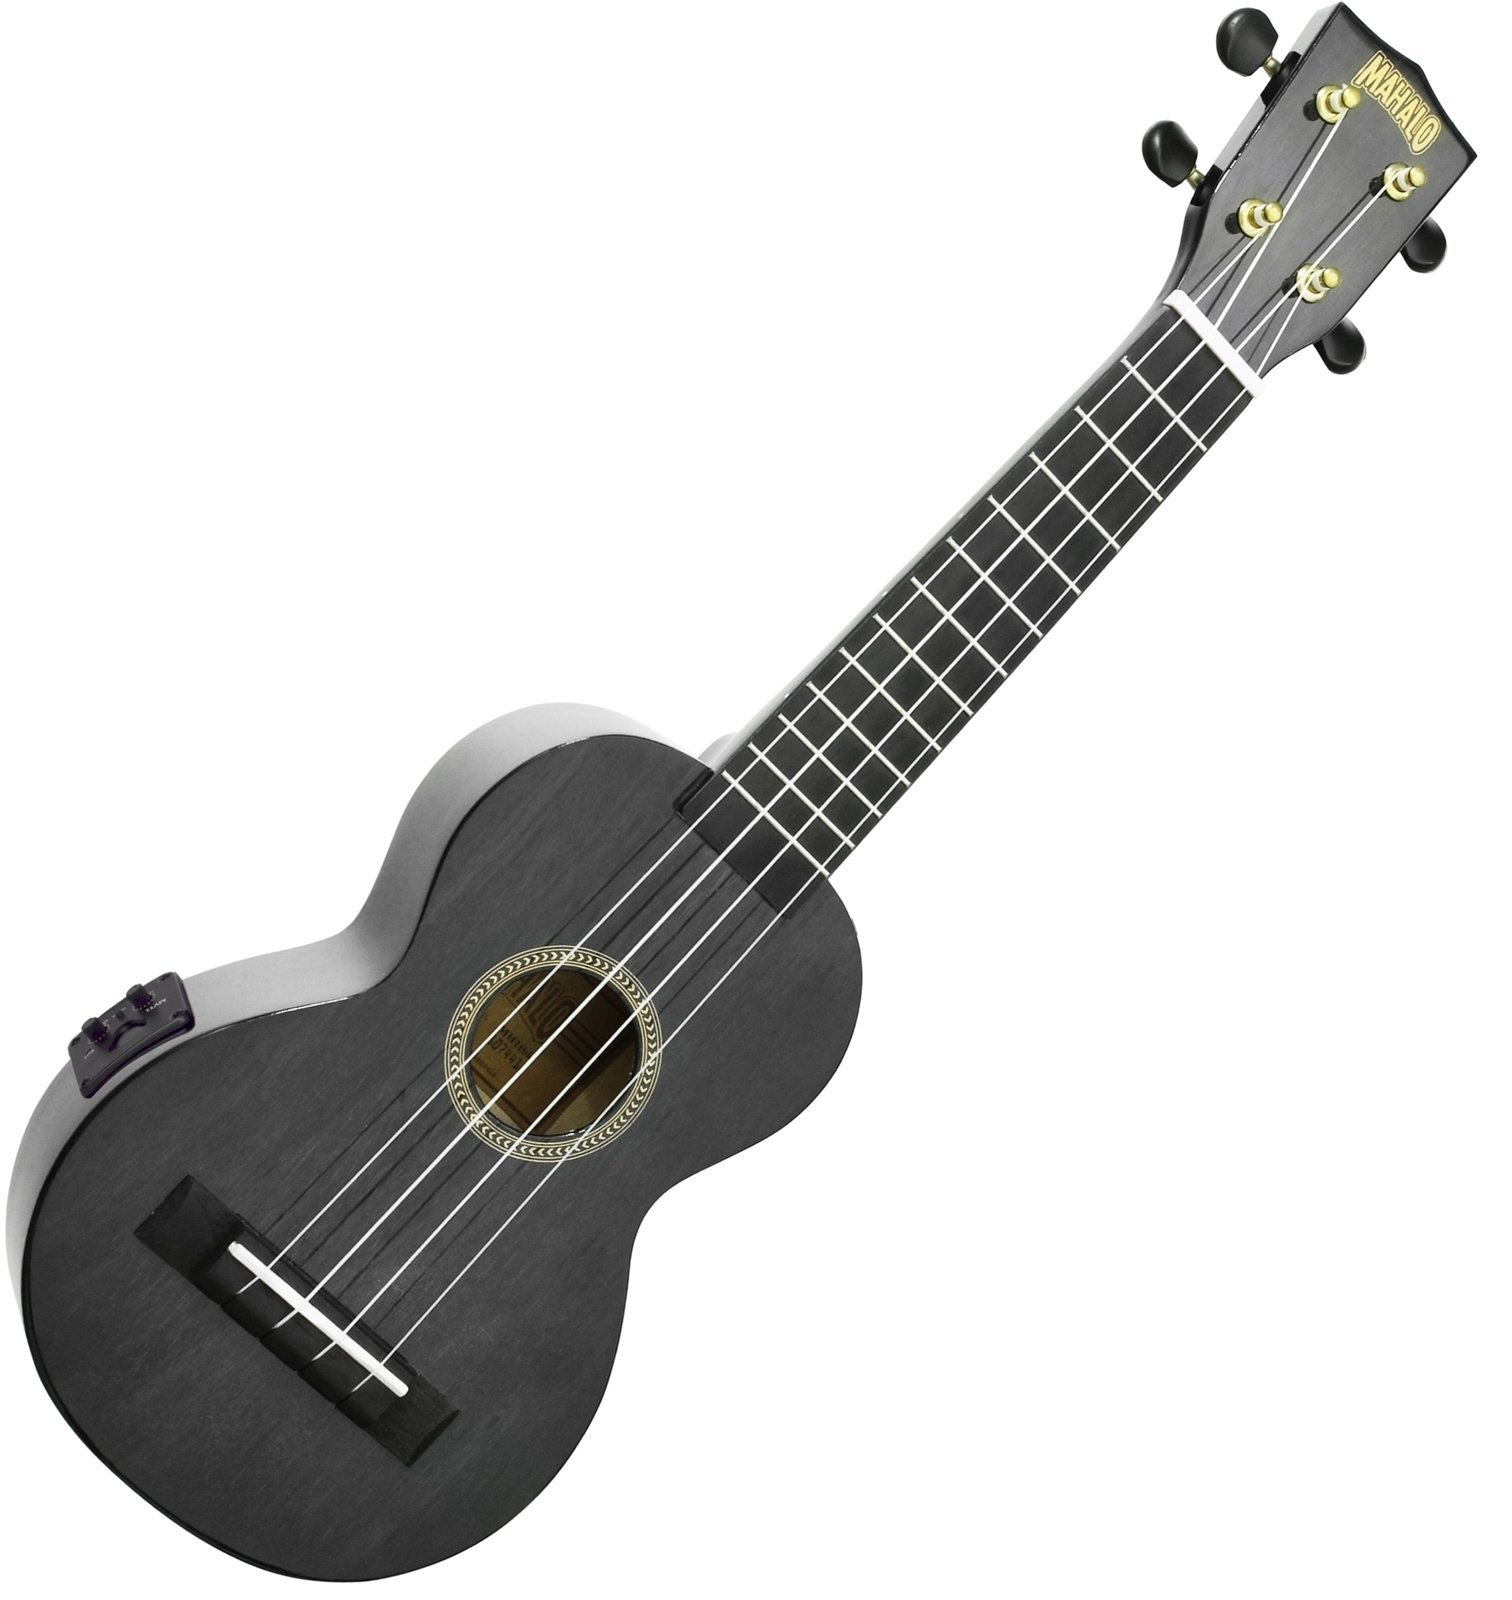 Sopránové ukulele Mahalo Electric-Acoustic Soprano Ukulele Transparent Black